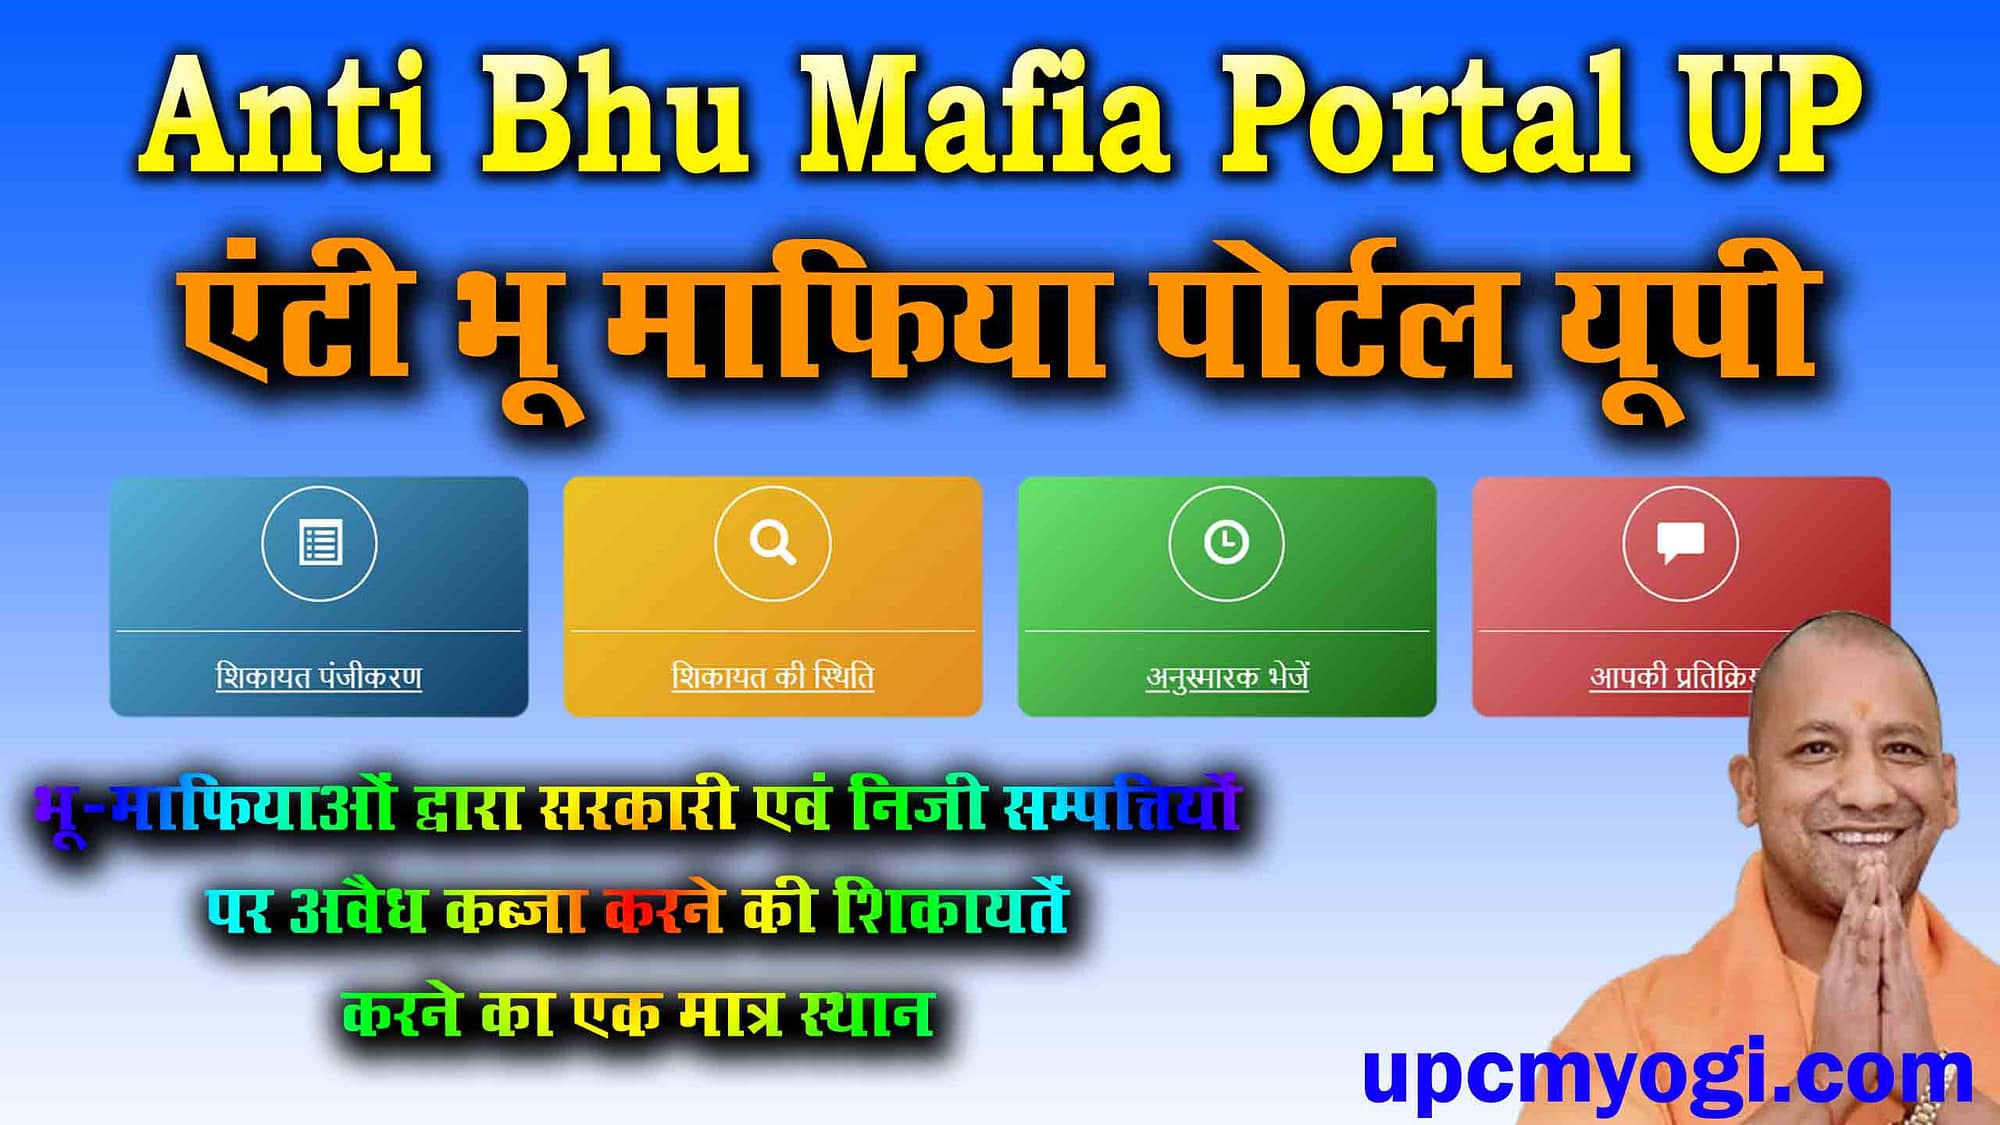 Anti Bhu Mafia Portal UP - एंटी भू माफिया पोर्टल यूपी ,अवैध कब्जे की परेशानी से बचने के लिए करें पंजीकरण